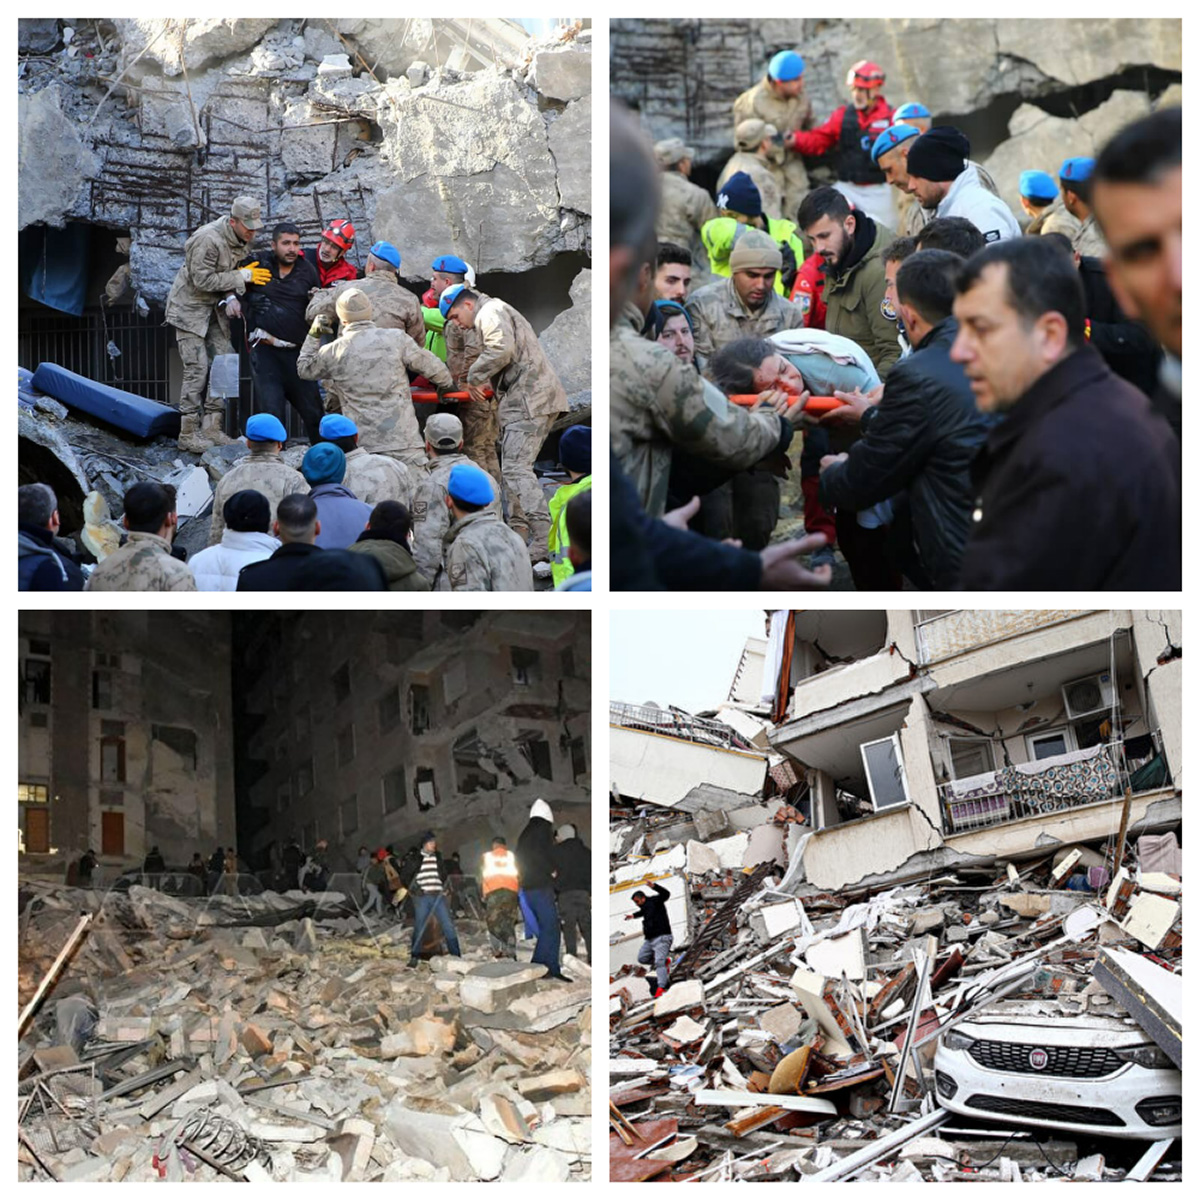 图2：二零二三年二月六日（周一），土耳其和叙利亚边境发生7.8级地震，图为地震造成的破坏和救援人员从倒塌的建筑物中救援受困者。（网络图片合成）